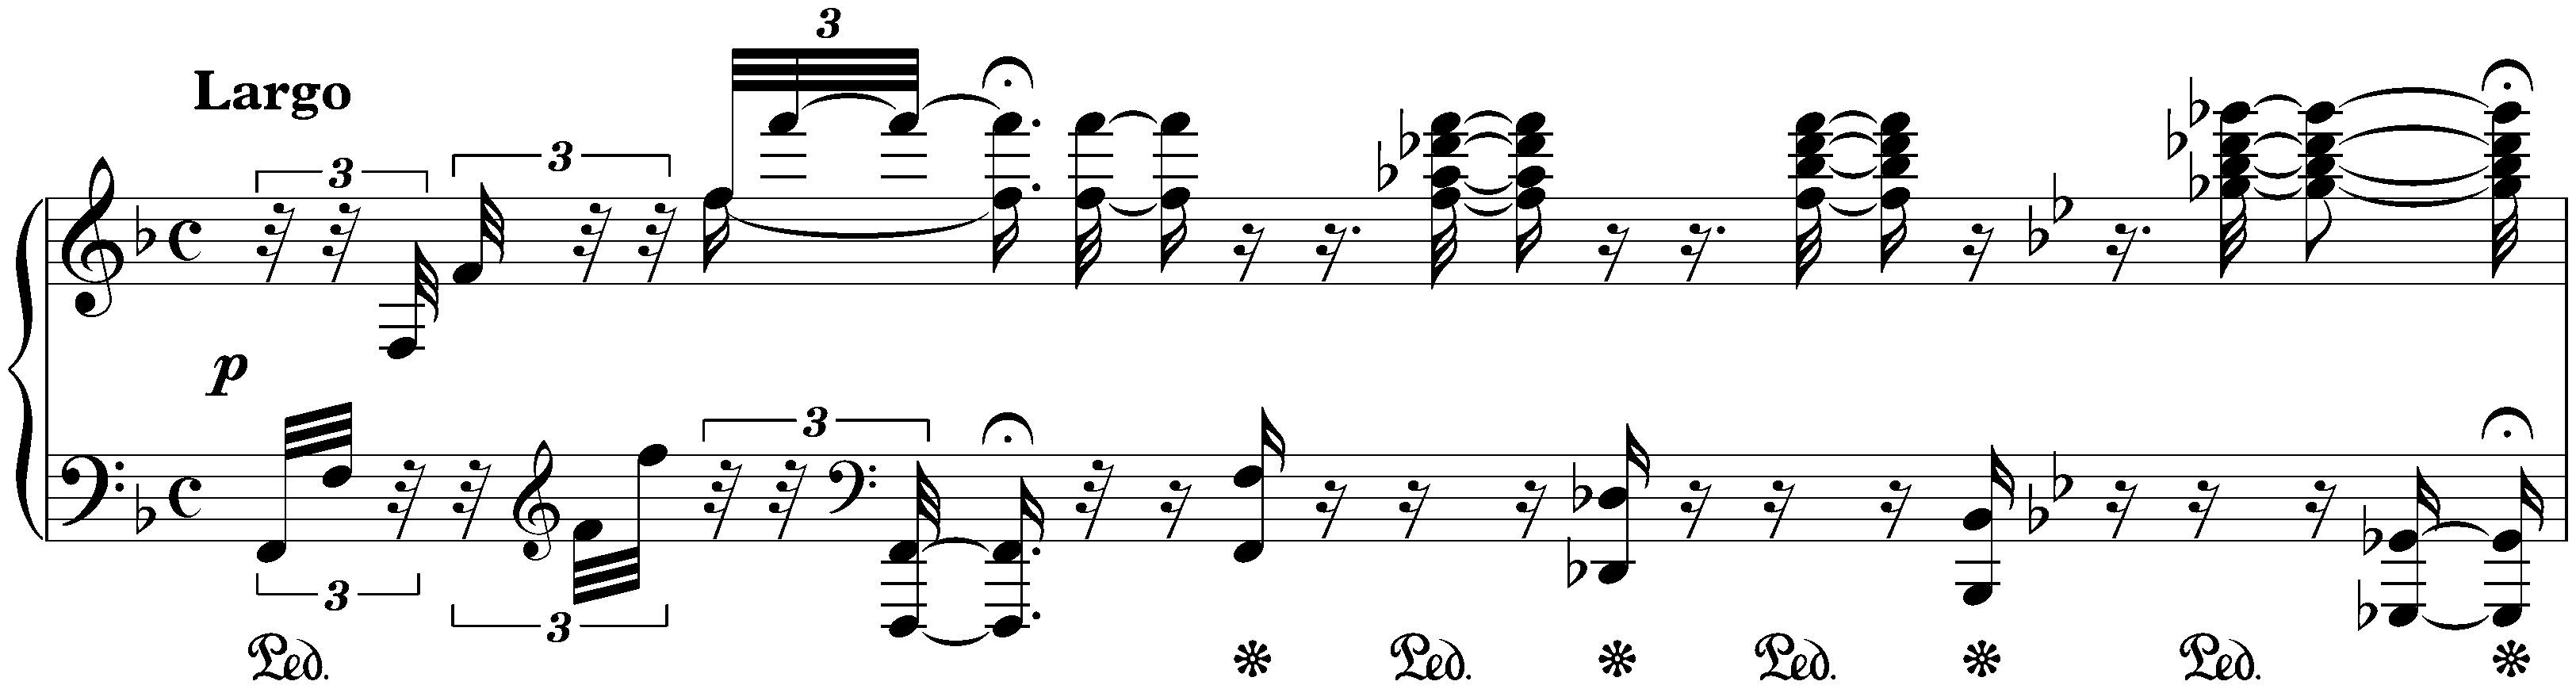 Sonata no. 29 in B-flat major, op. 106 (Hammerklavier); 4. Largo – Allegro risoluto